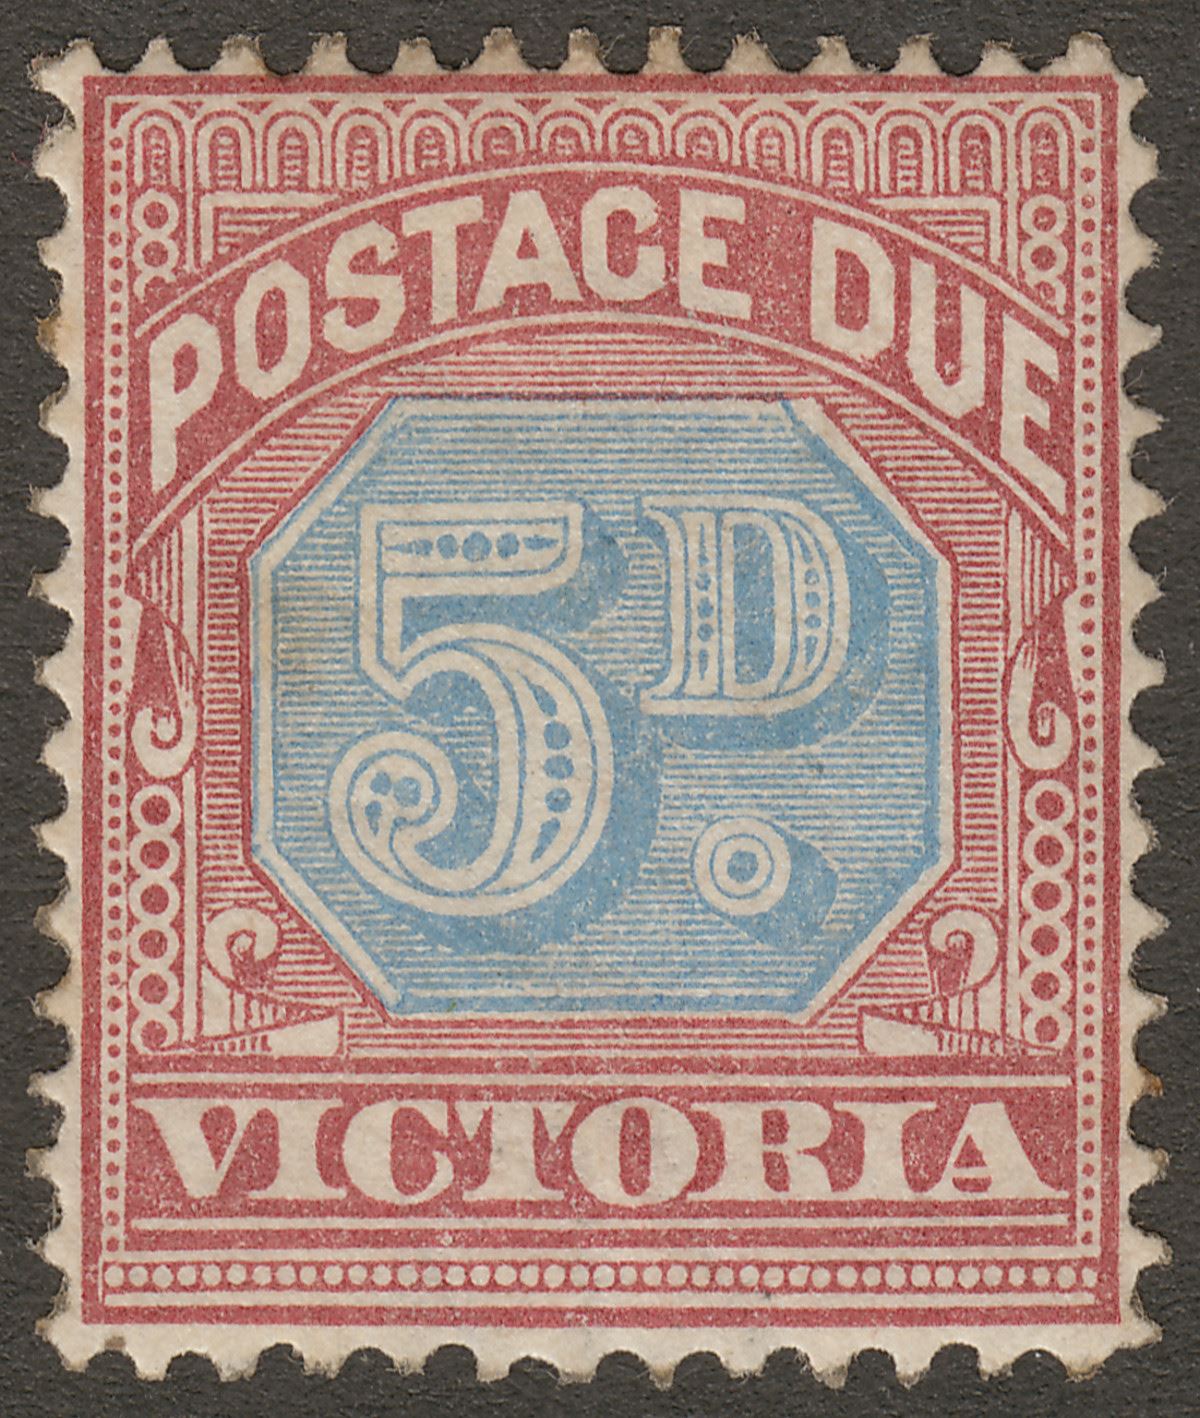 Victoria 1890 QV Postage Due 5d D Blue + Brown-Lake wmk Invert Mint* SG D5 c£29